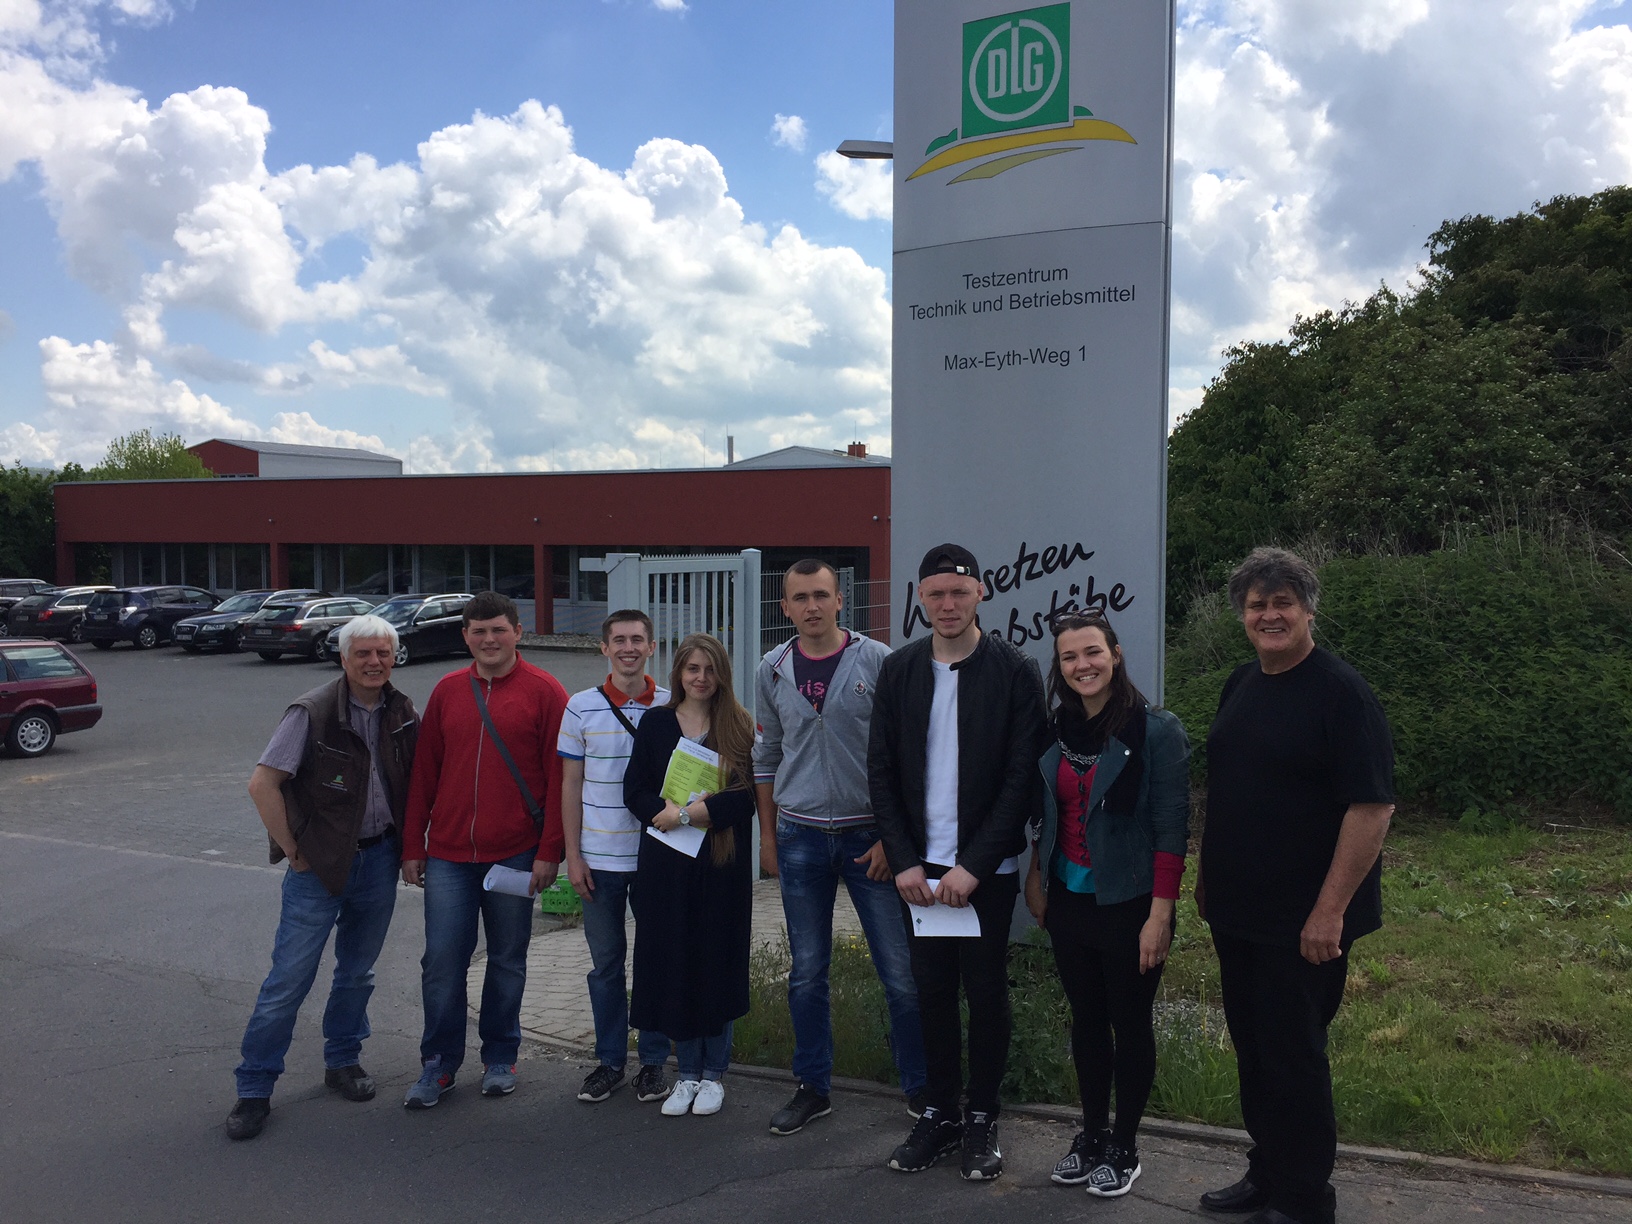 Ukrainische Studenten zu Besuch im DLG Testzentrum